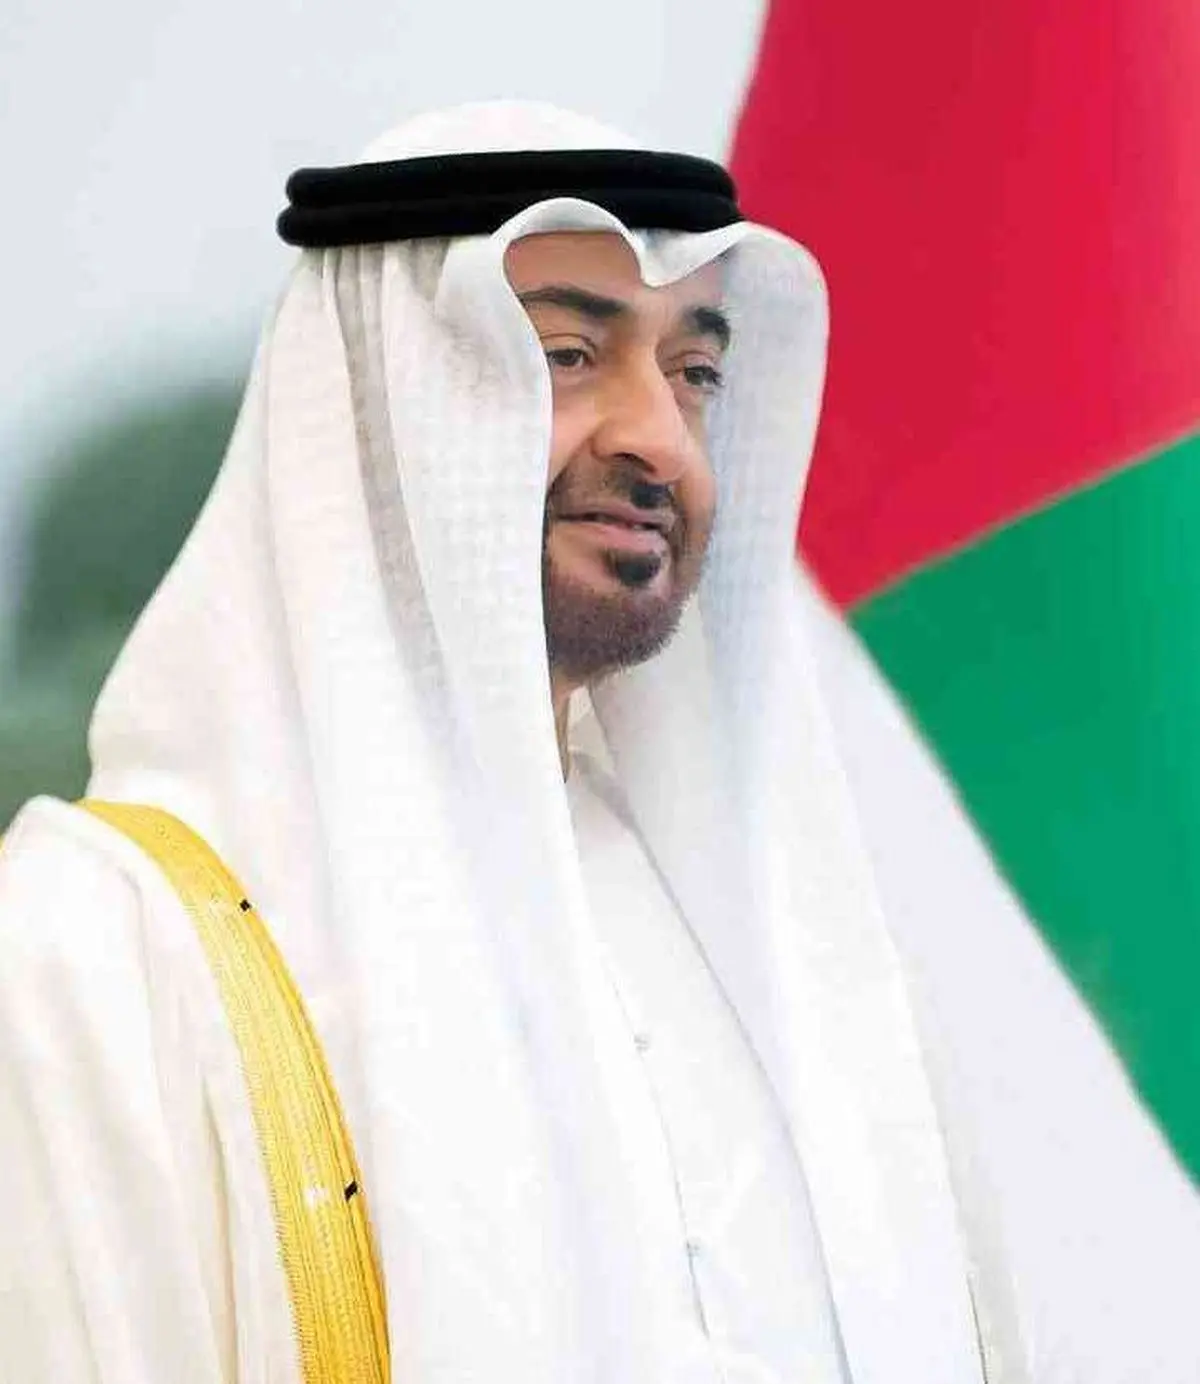 رئیس جدید امارات چه کسی است؟ | همه چیز درباره‌ی امارات و انزوای سیاسی‌اش